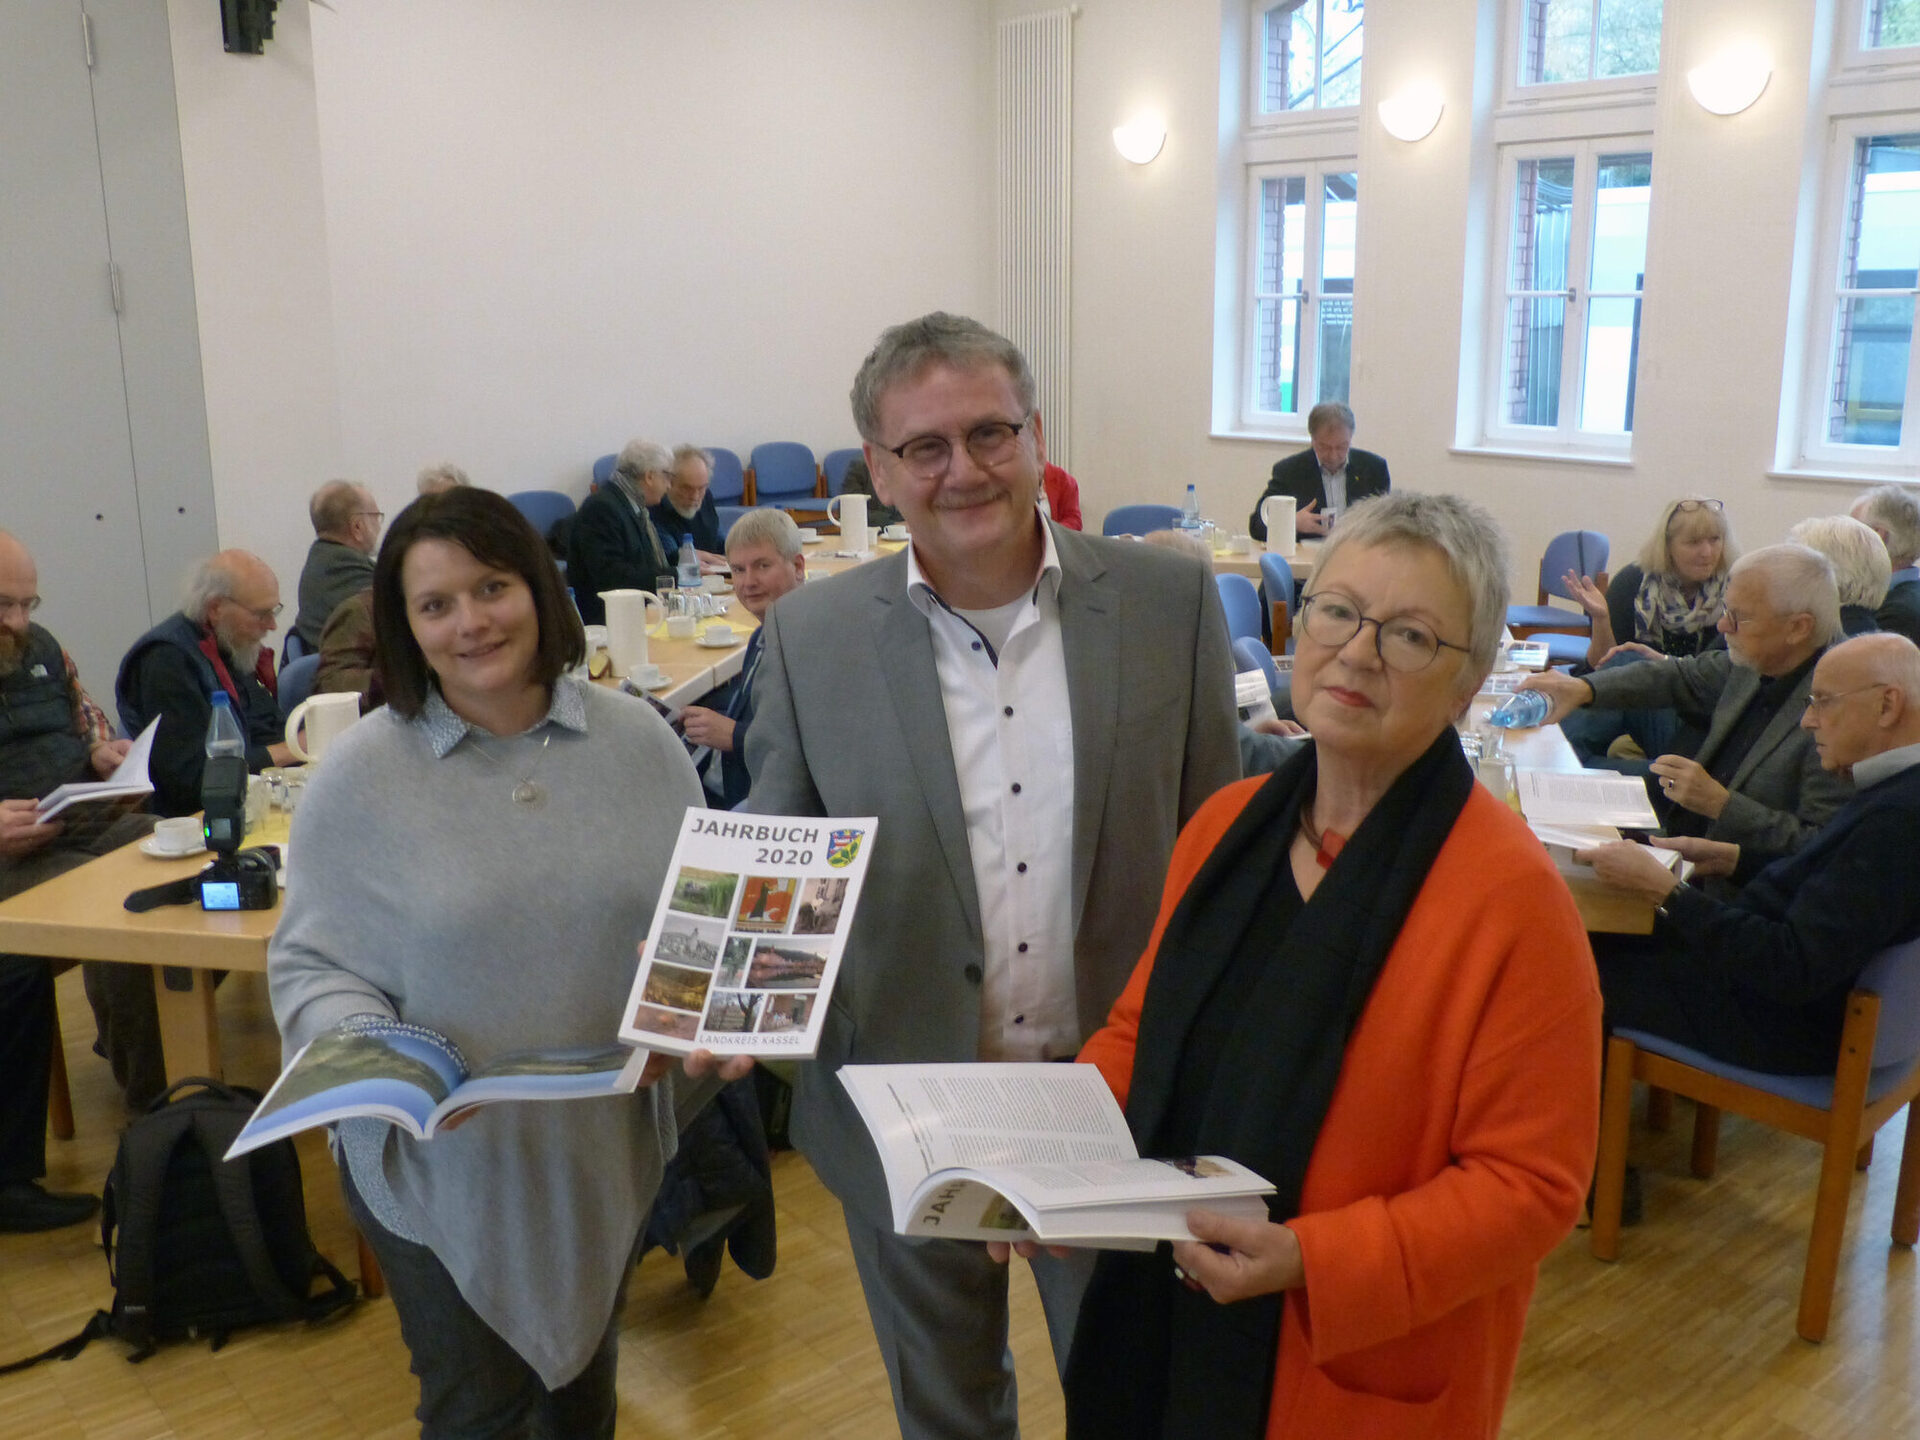 v.l.: Christien-M. Borschel (Redaktion Jahresrückblick und Anzeigen), Landrat Uwe Schmidt und Anne Riedel (Redaktion Jahrbuch) präsentieren das Jahrbuch 2020.